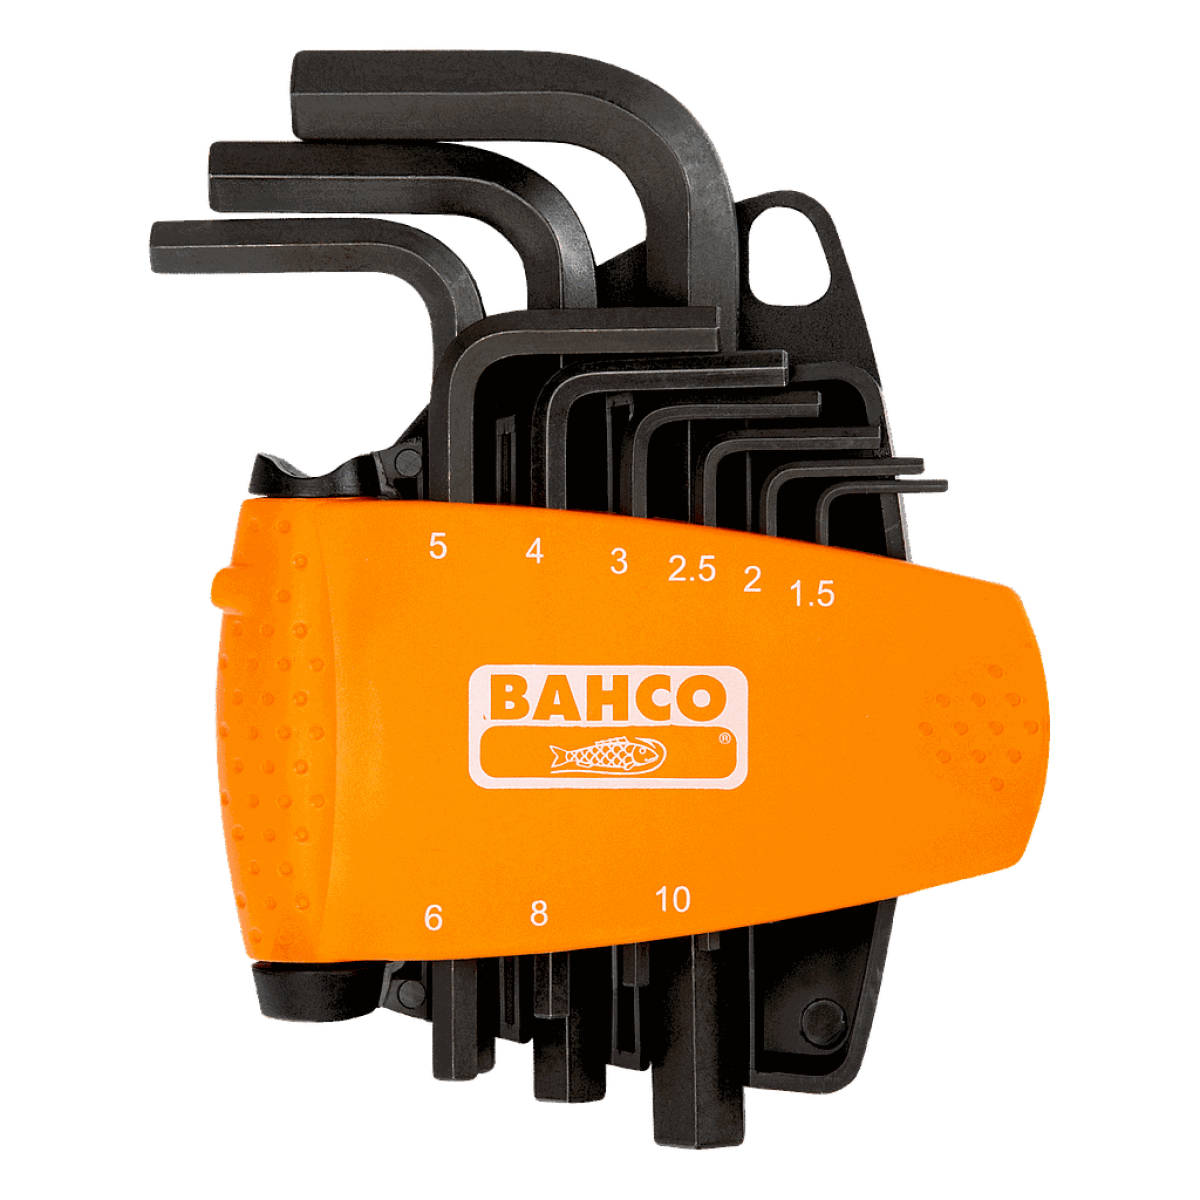 Bahco - Bahco - Jeu de 9 clés mâles 6 pans 1,5 - 10 mm avec support compact en deux parties - BE-9578 - Clés et douilles